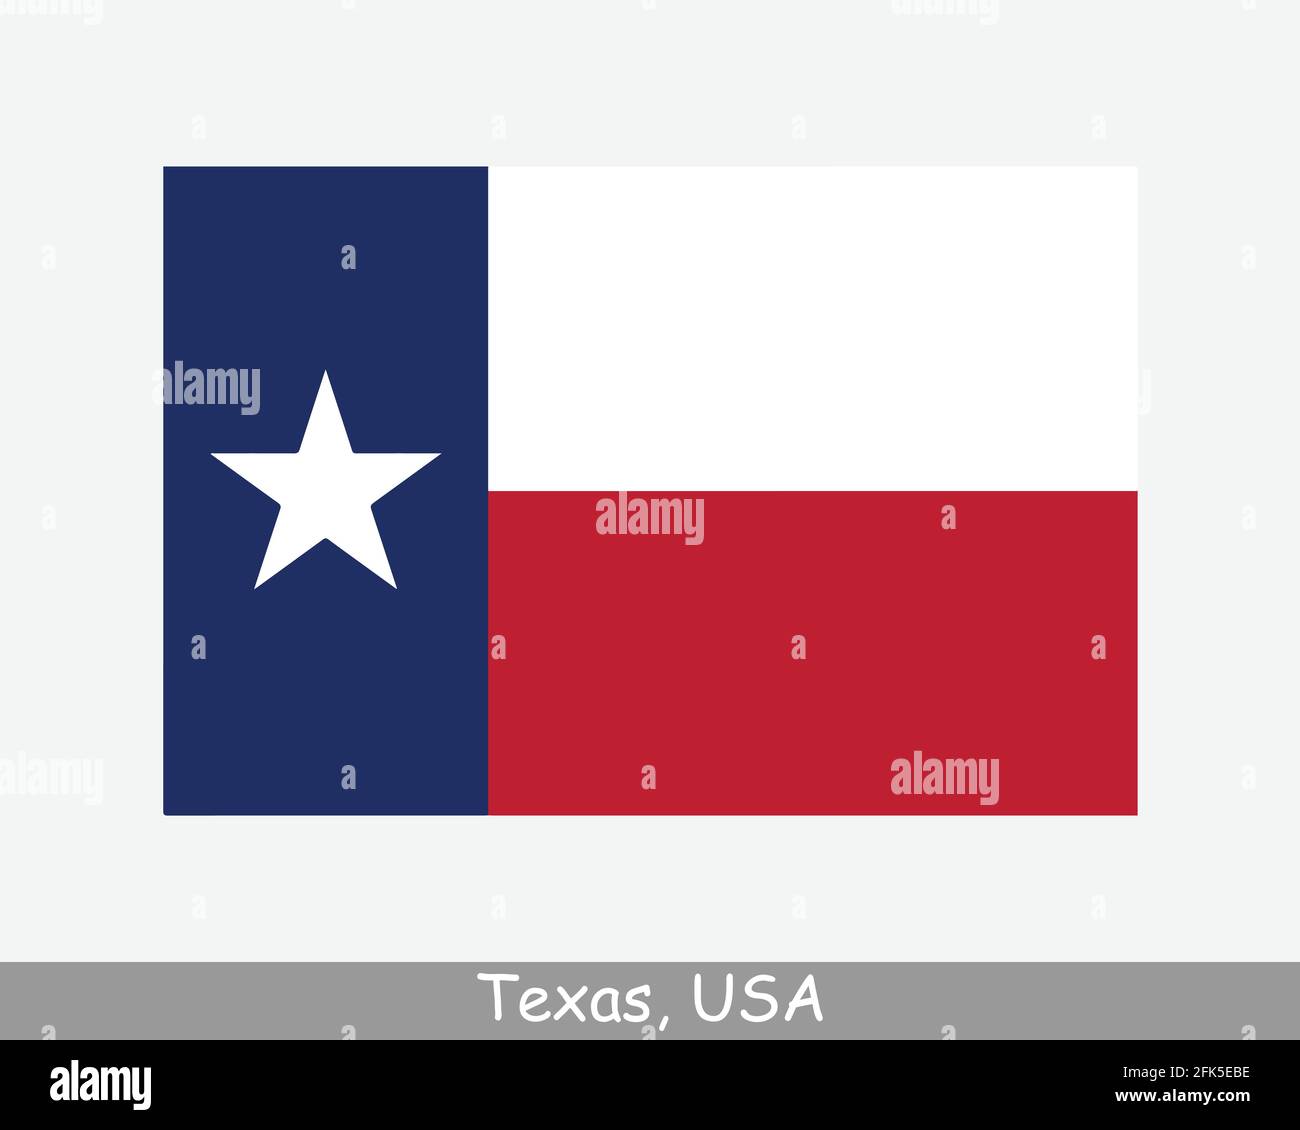 Texas USA Staatsflagge. Flagge von TX, USA isoliert auf weißem Hintergrund. Vereinigte Staaten, Amerika, American, Vereinigte Staaten von Amerika, US-Bundesstaat. Vektor-Illus Stock Vektor